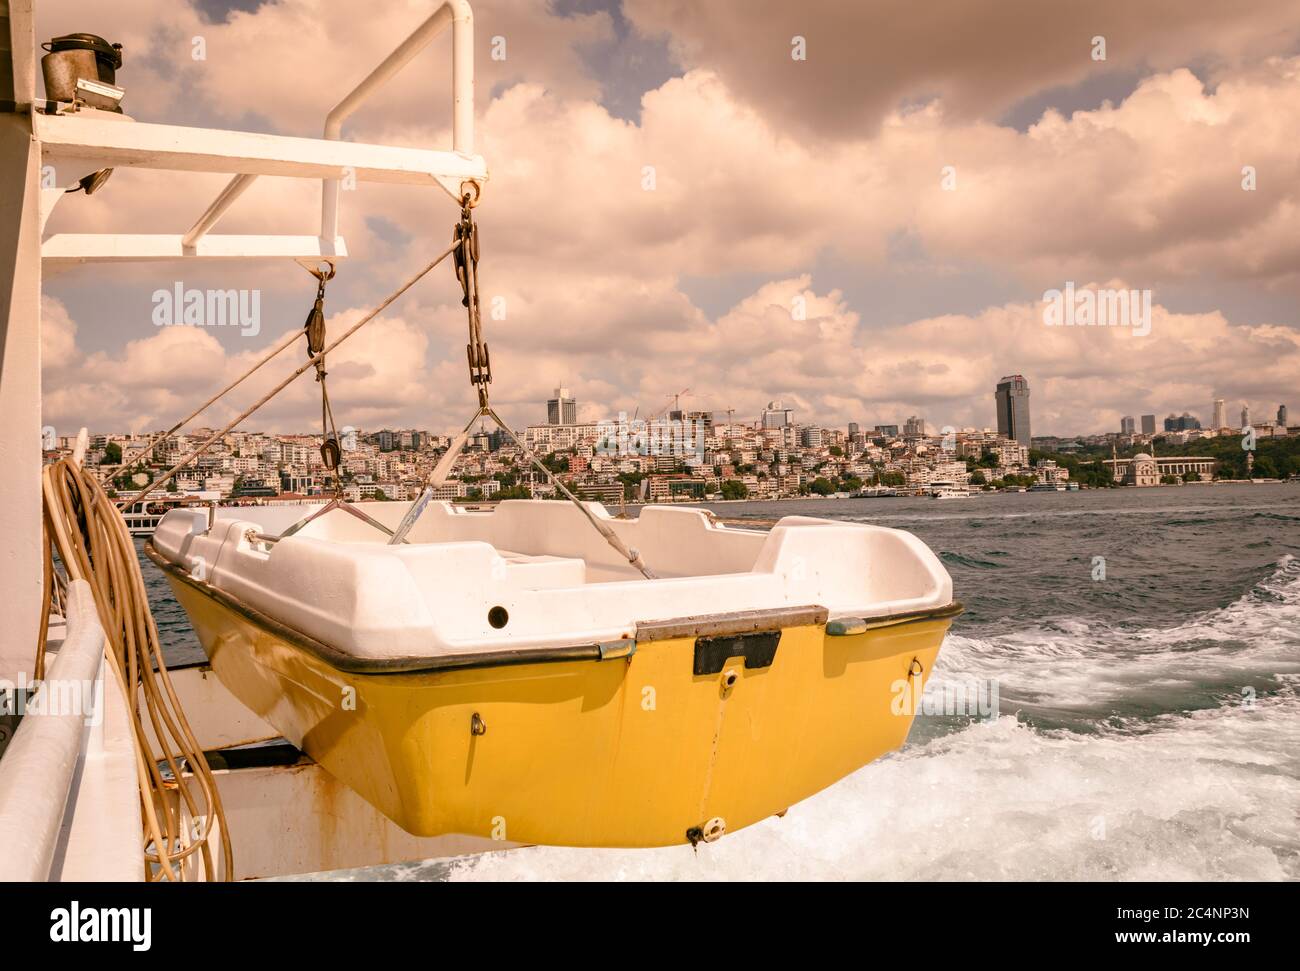 piccola barca di colore giallo-bianco appesa a una nave in movimento, grandi nuvole bianche, mare schiumoso e la città dietro come vista di sfondo. Foto Stock